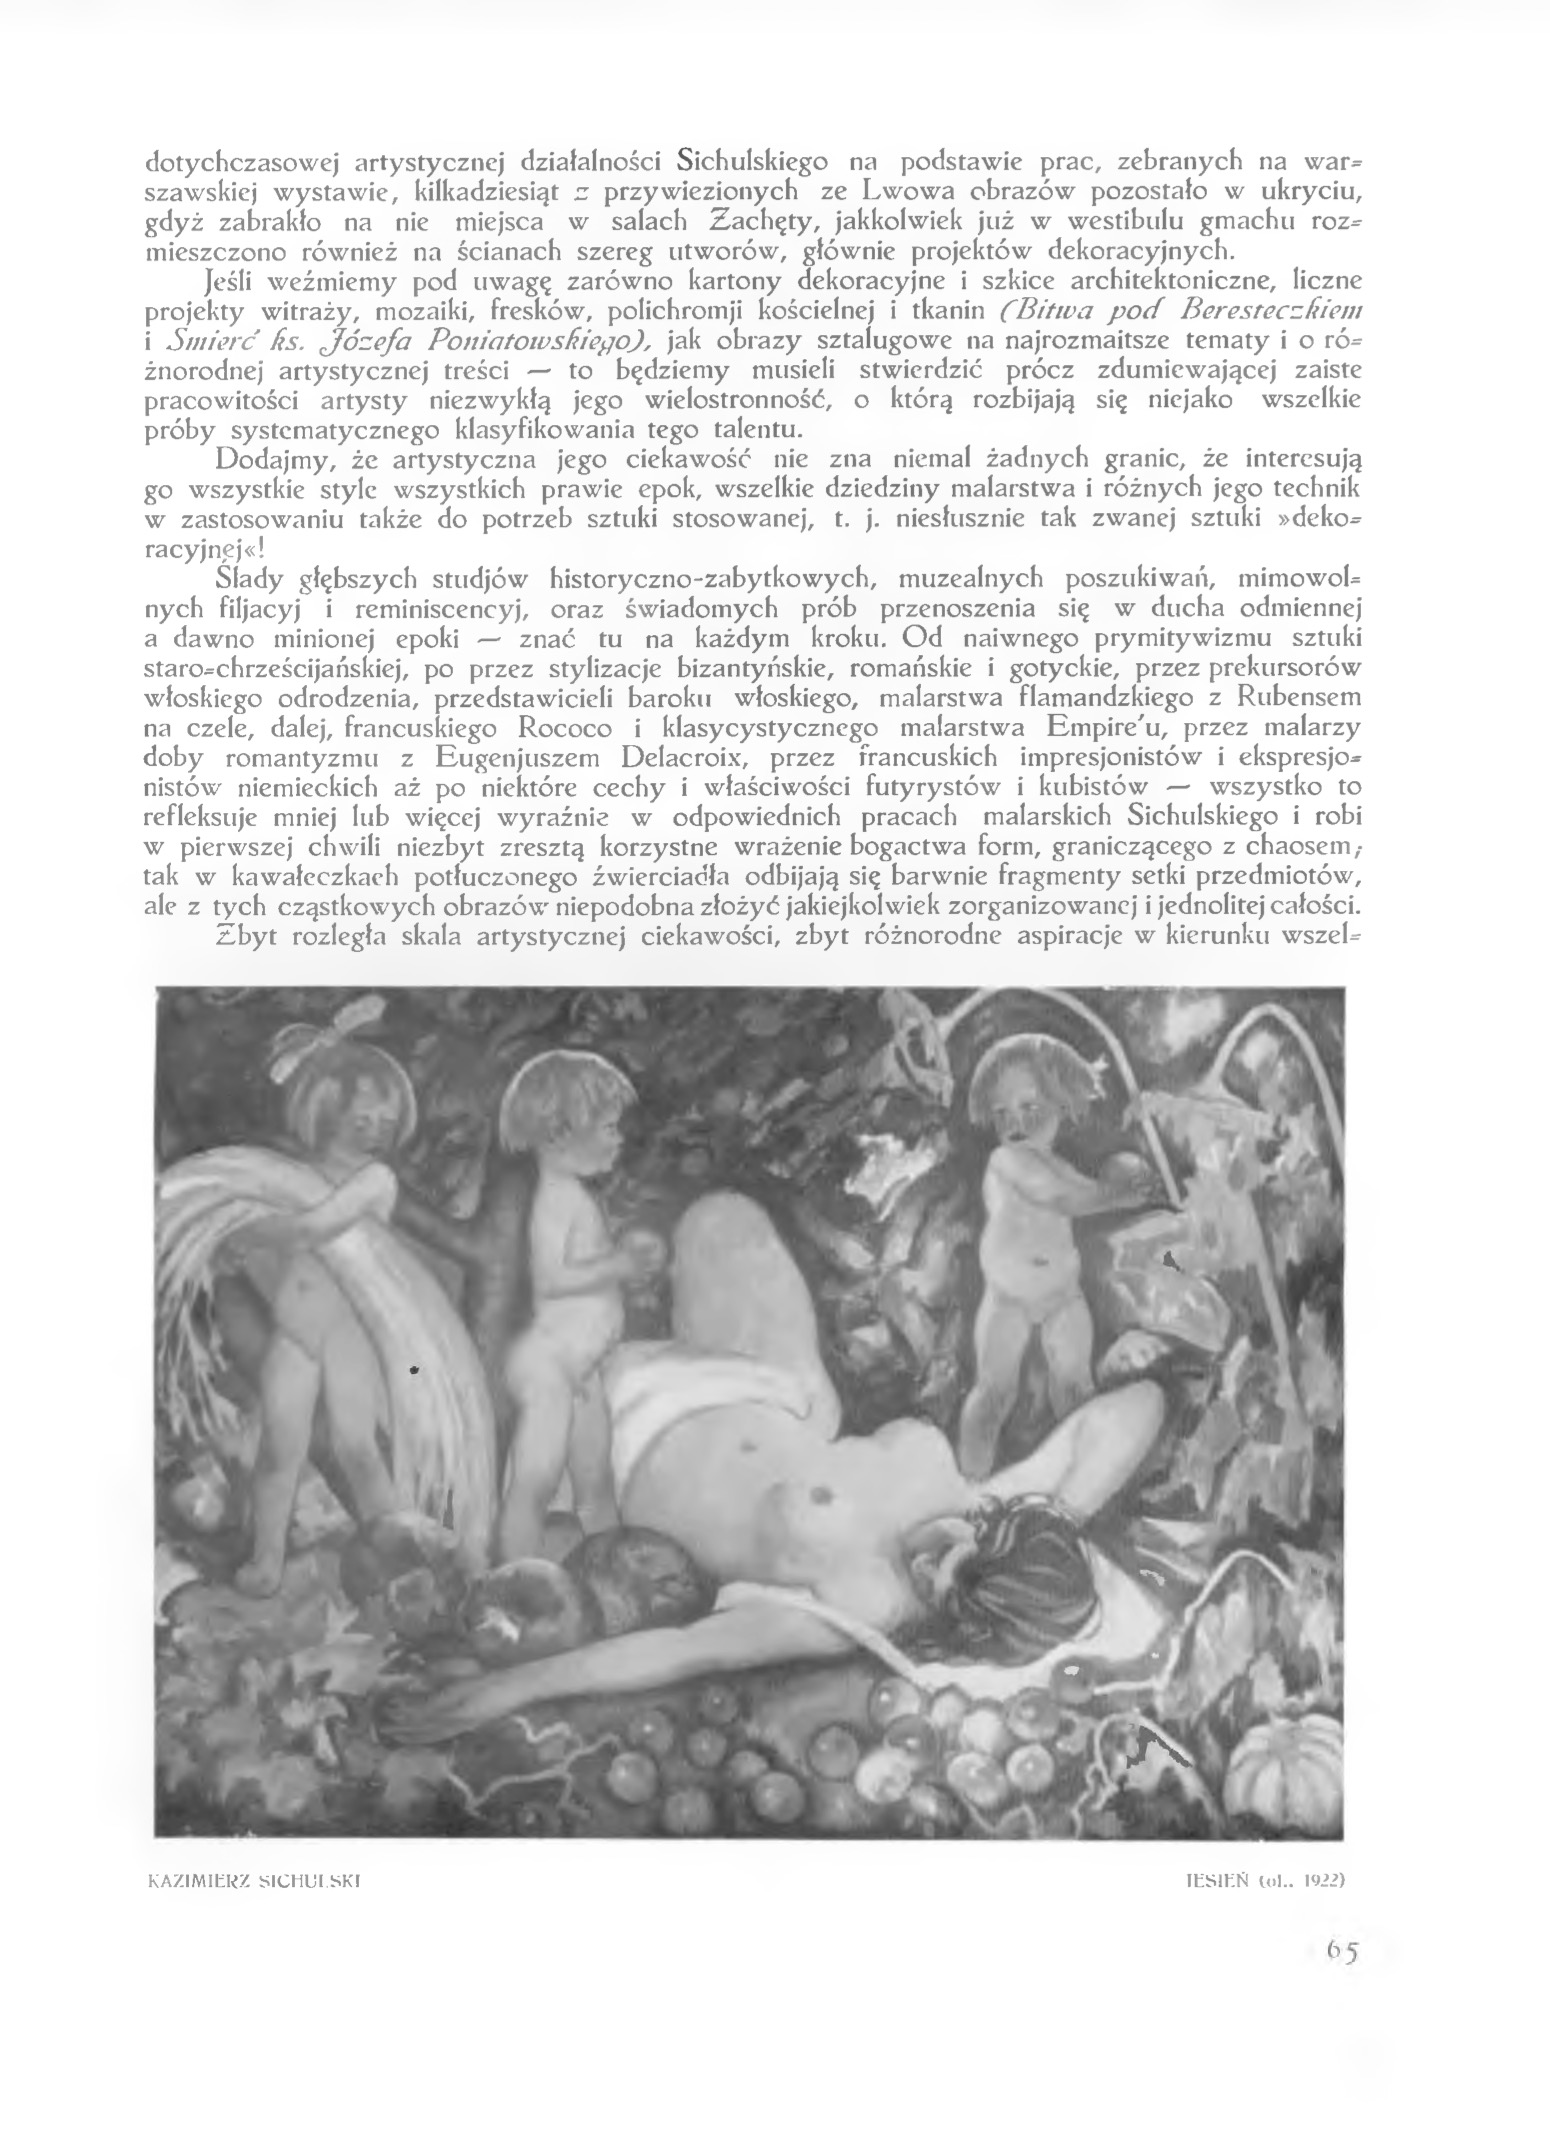 Fotografia przedstawiająca Kazimierz Sichulski\'s painting \"Orphans\" from the Lviv Art Gallery